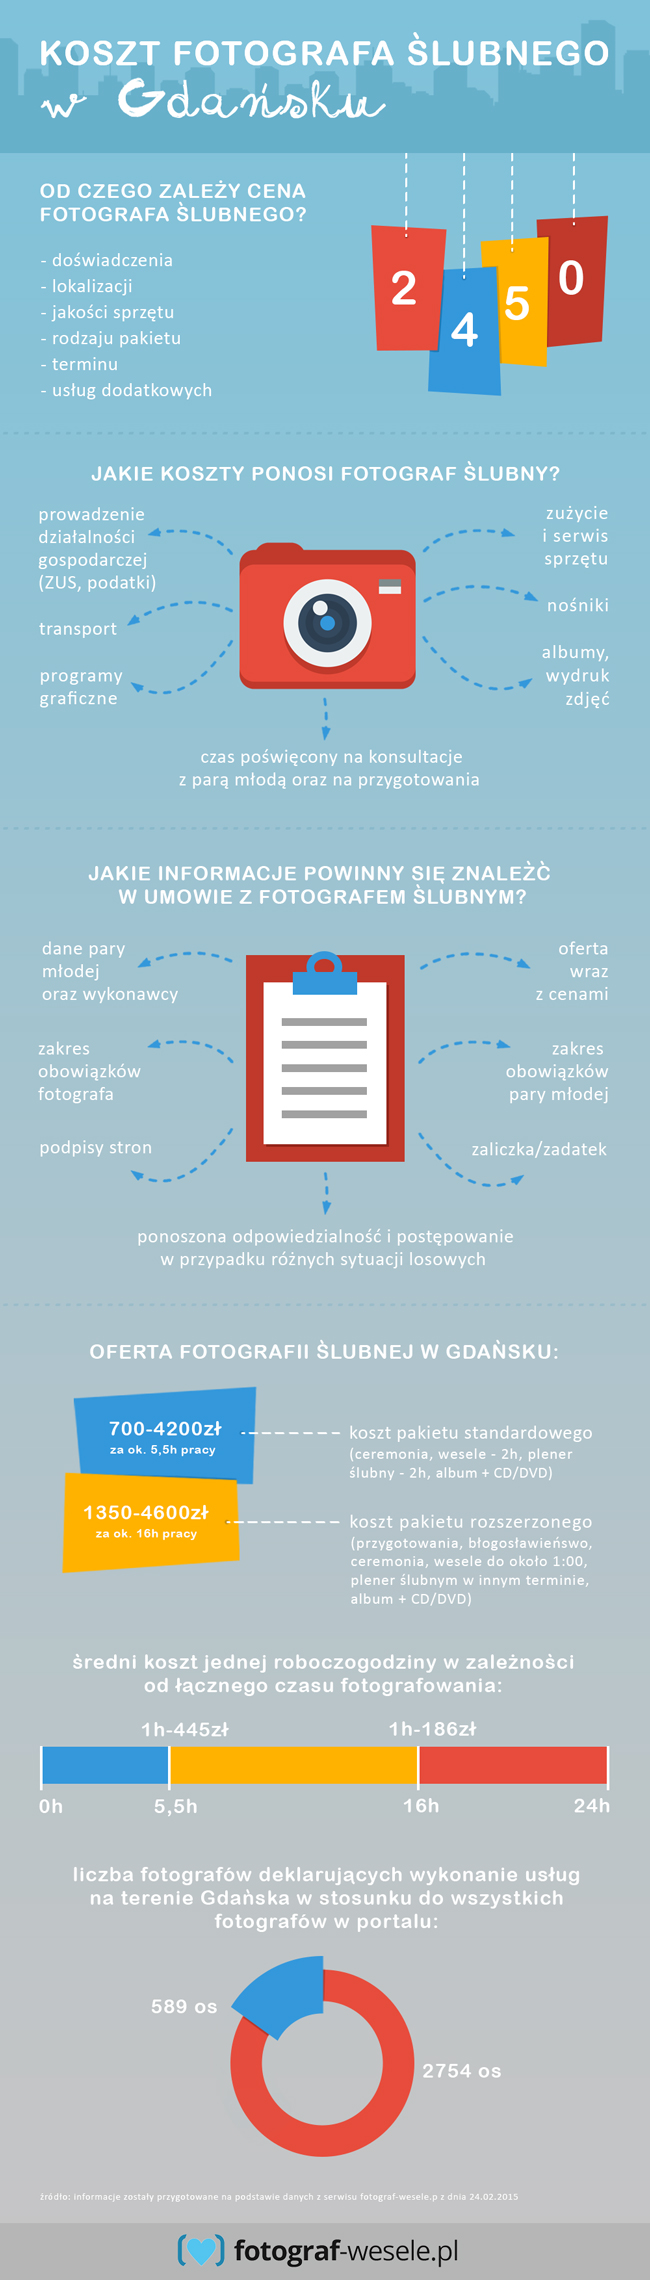 Gdańsk - infografika koszty zdjęć ślubnych